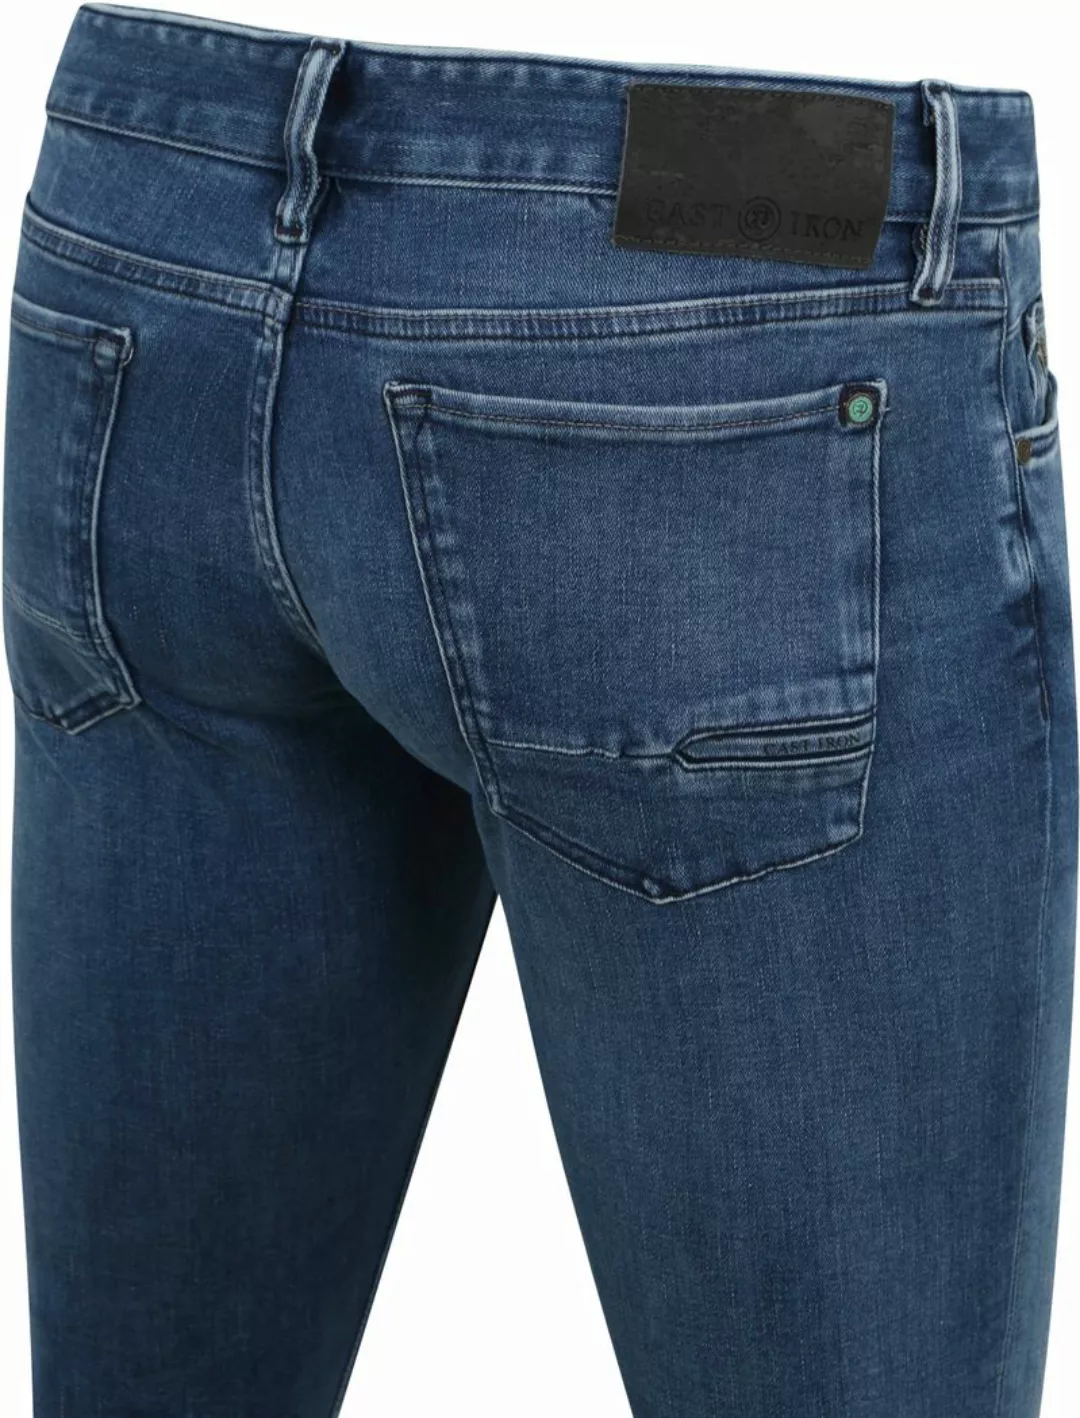 Cast Iron Riser Jeans Blau IIW - Größe W 30 - L 34 günstig online kaufen